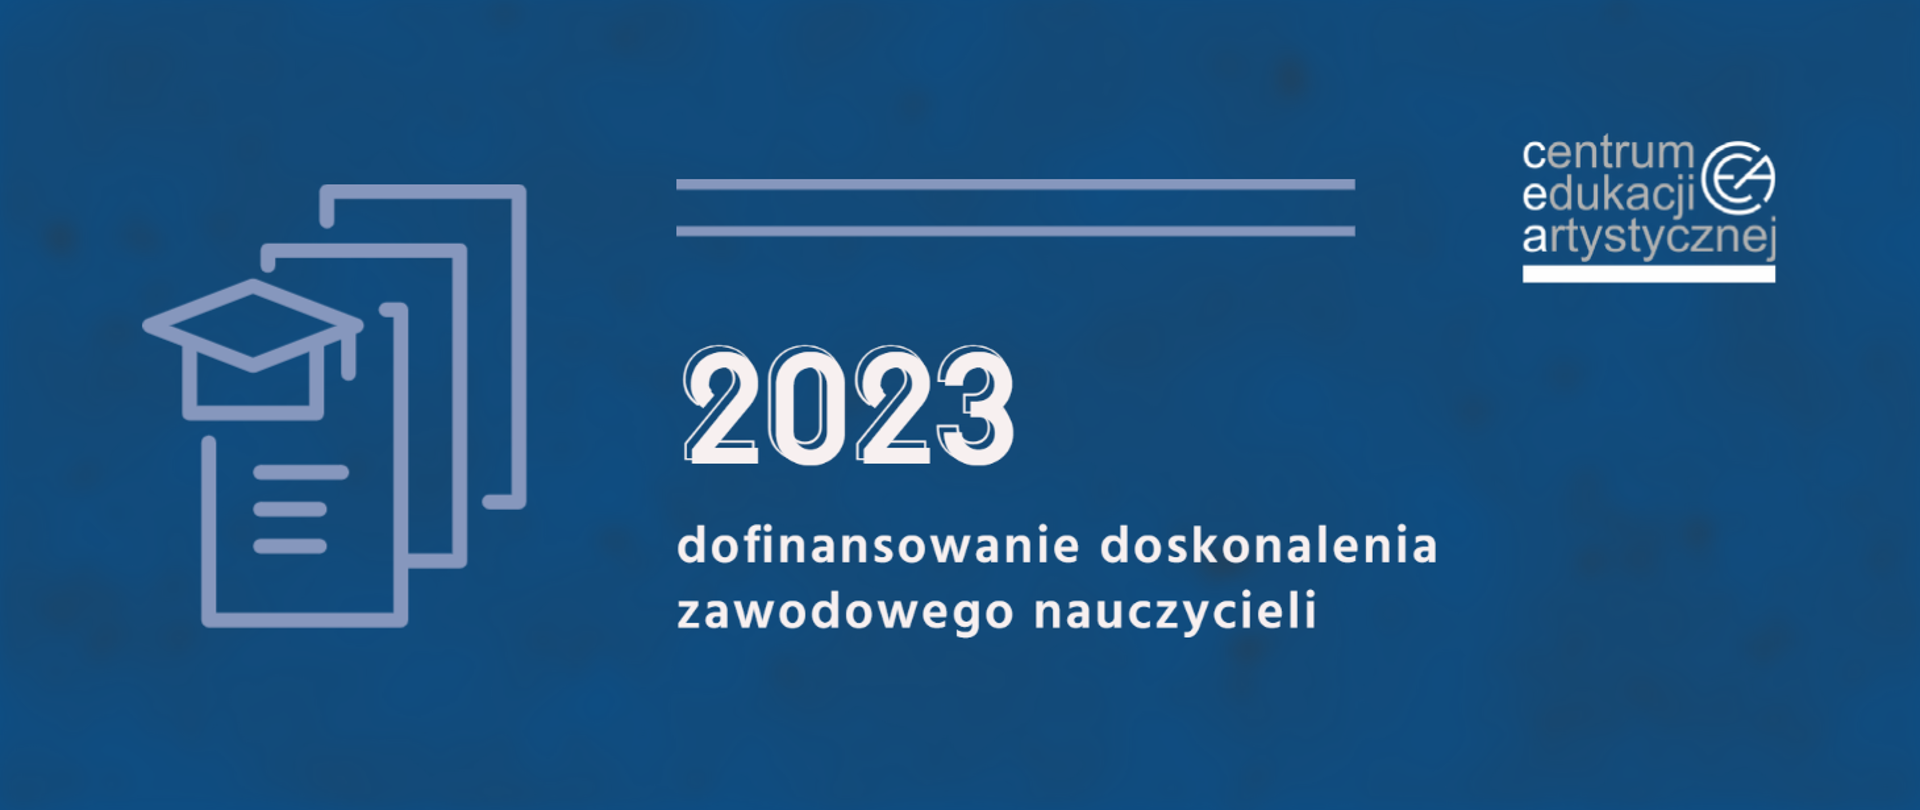 Grafika na niebieskie tle z logo CEA w prawym górnym rogu, ikonografią czapki nauczycielskiej i dokumentów po lewej stronie oraz tekstem "2023 dofinansowanie doskonalenia zawodowego nauczycieli"